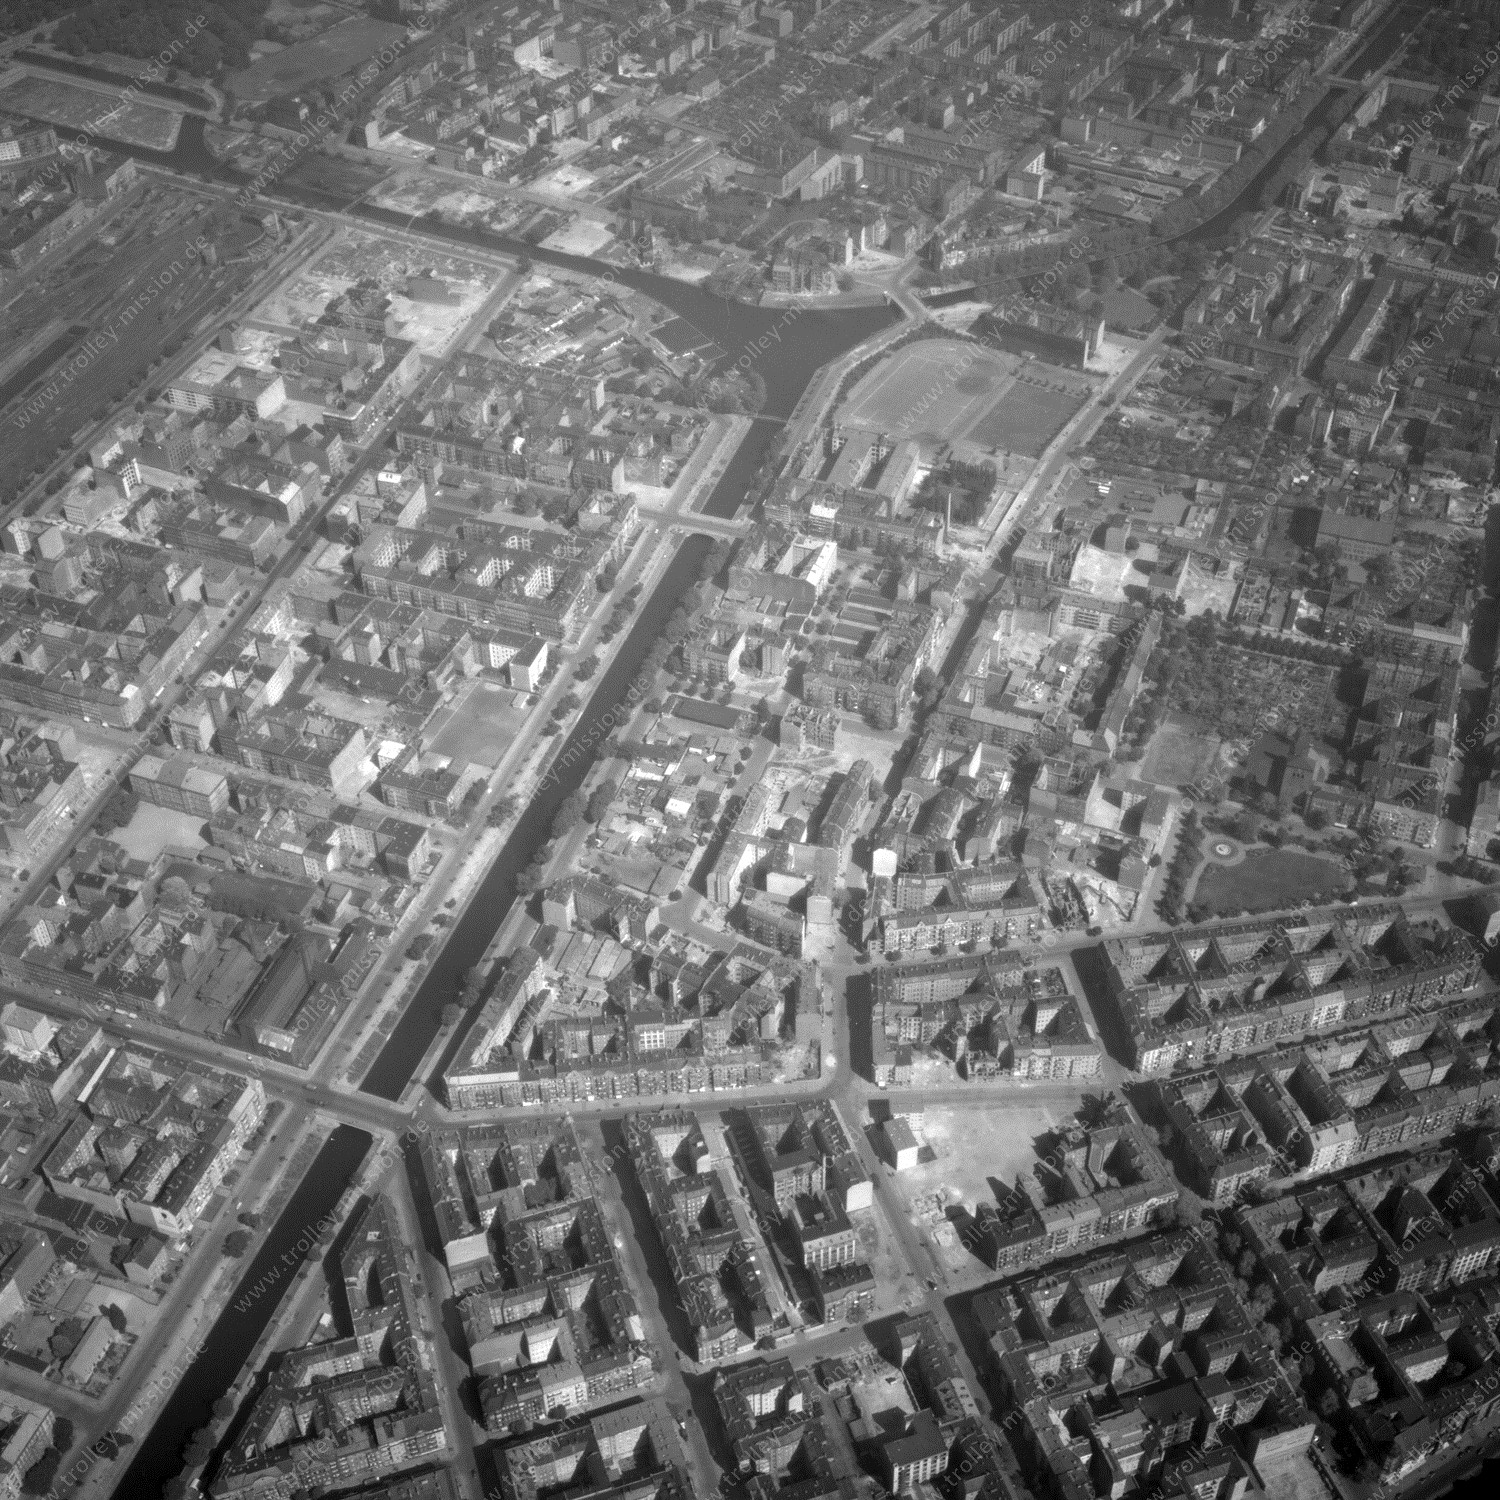 Alte Fotos und Luftbilder von Berlin - Luftbildaufnahme Nr. 04 - Historische Luftaufnahmen von West-Berlin aus dem Jahr 1954 - Flugstrecke Mike